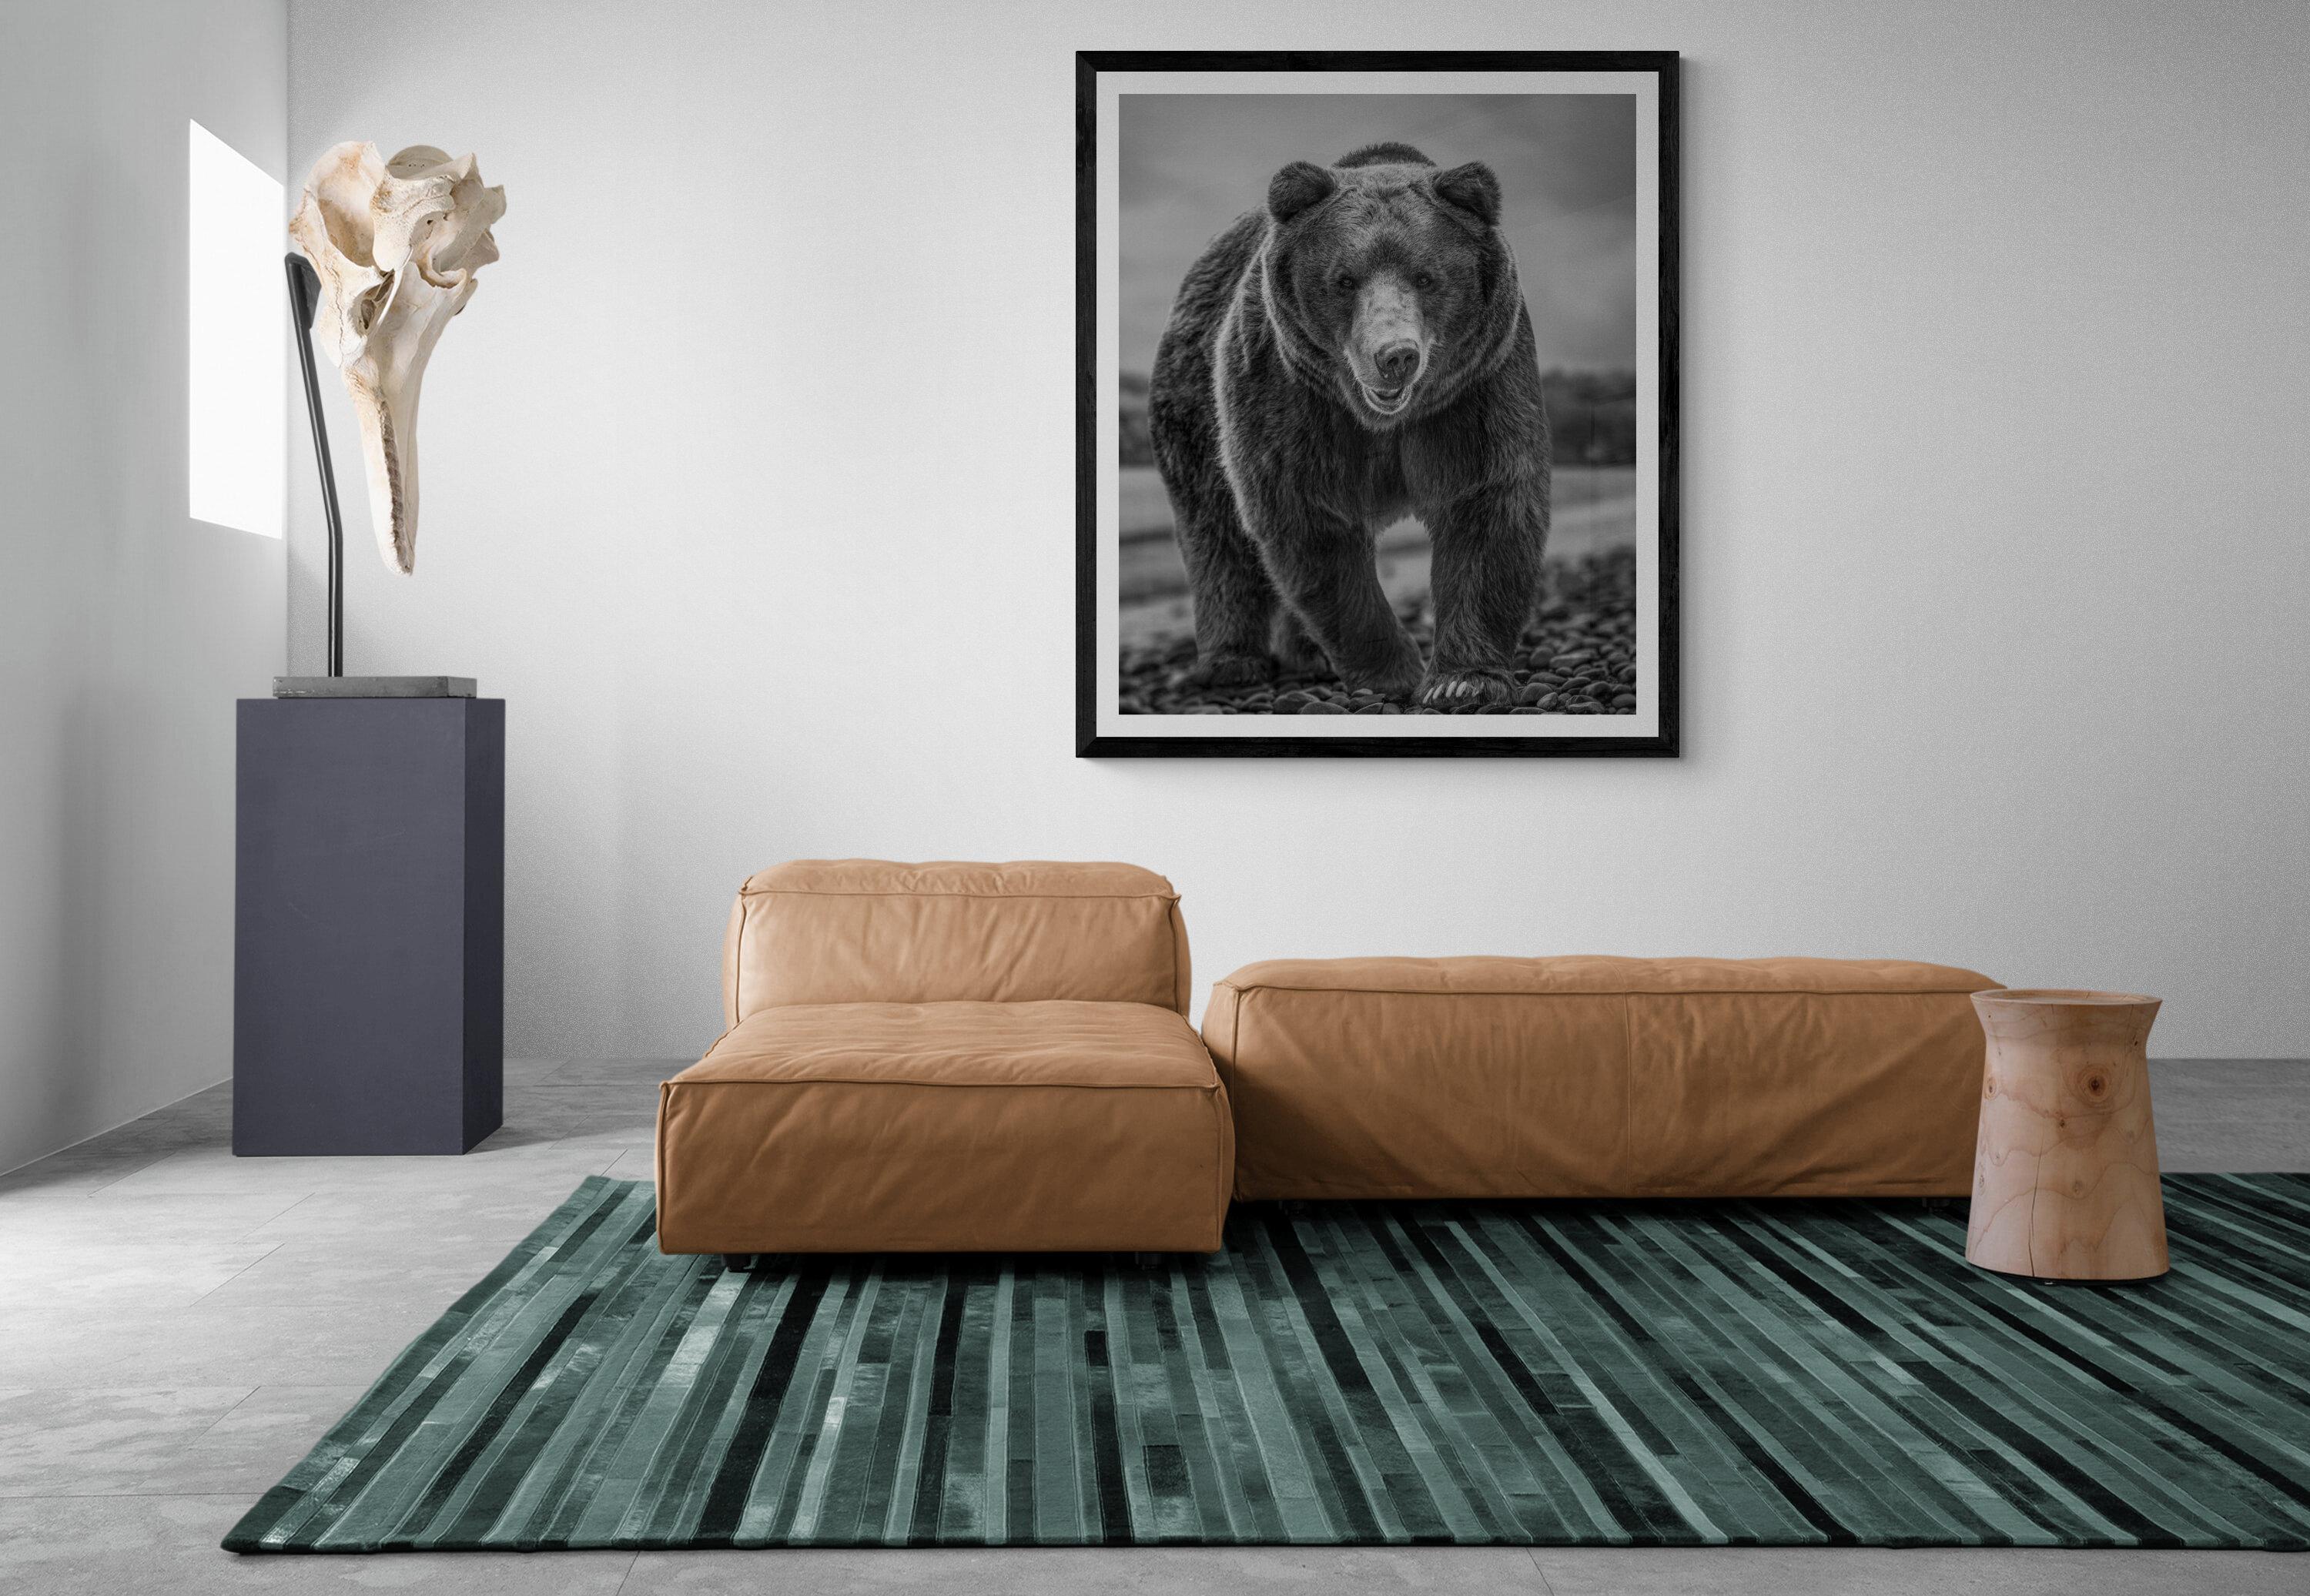 Il s'agit d'une photographie contemporaine d'un ours brun.  
Ceci a été tourné sur l'île de Kodiak en 2019. 
Papier pigmentaire d'archivage 
Encres d'archivage
Signé et numéroté 
Encadrement disponible. Renseignez-vous sur les tarifs. 


Shane